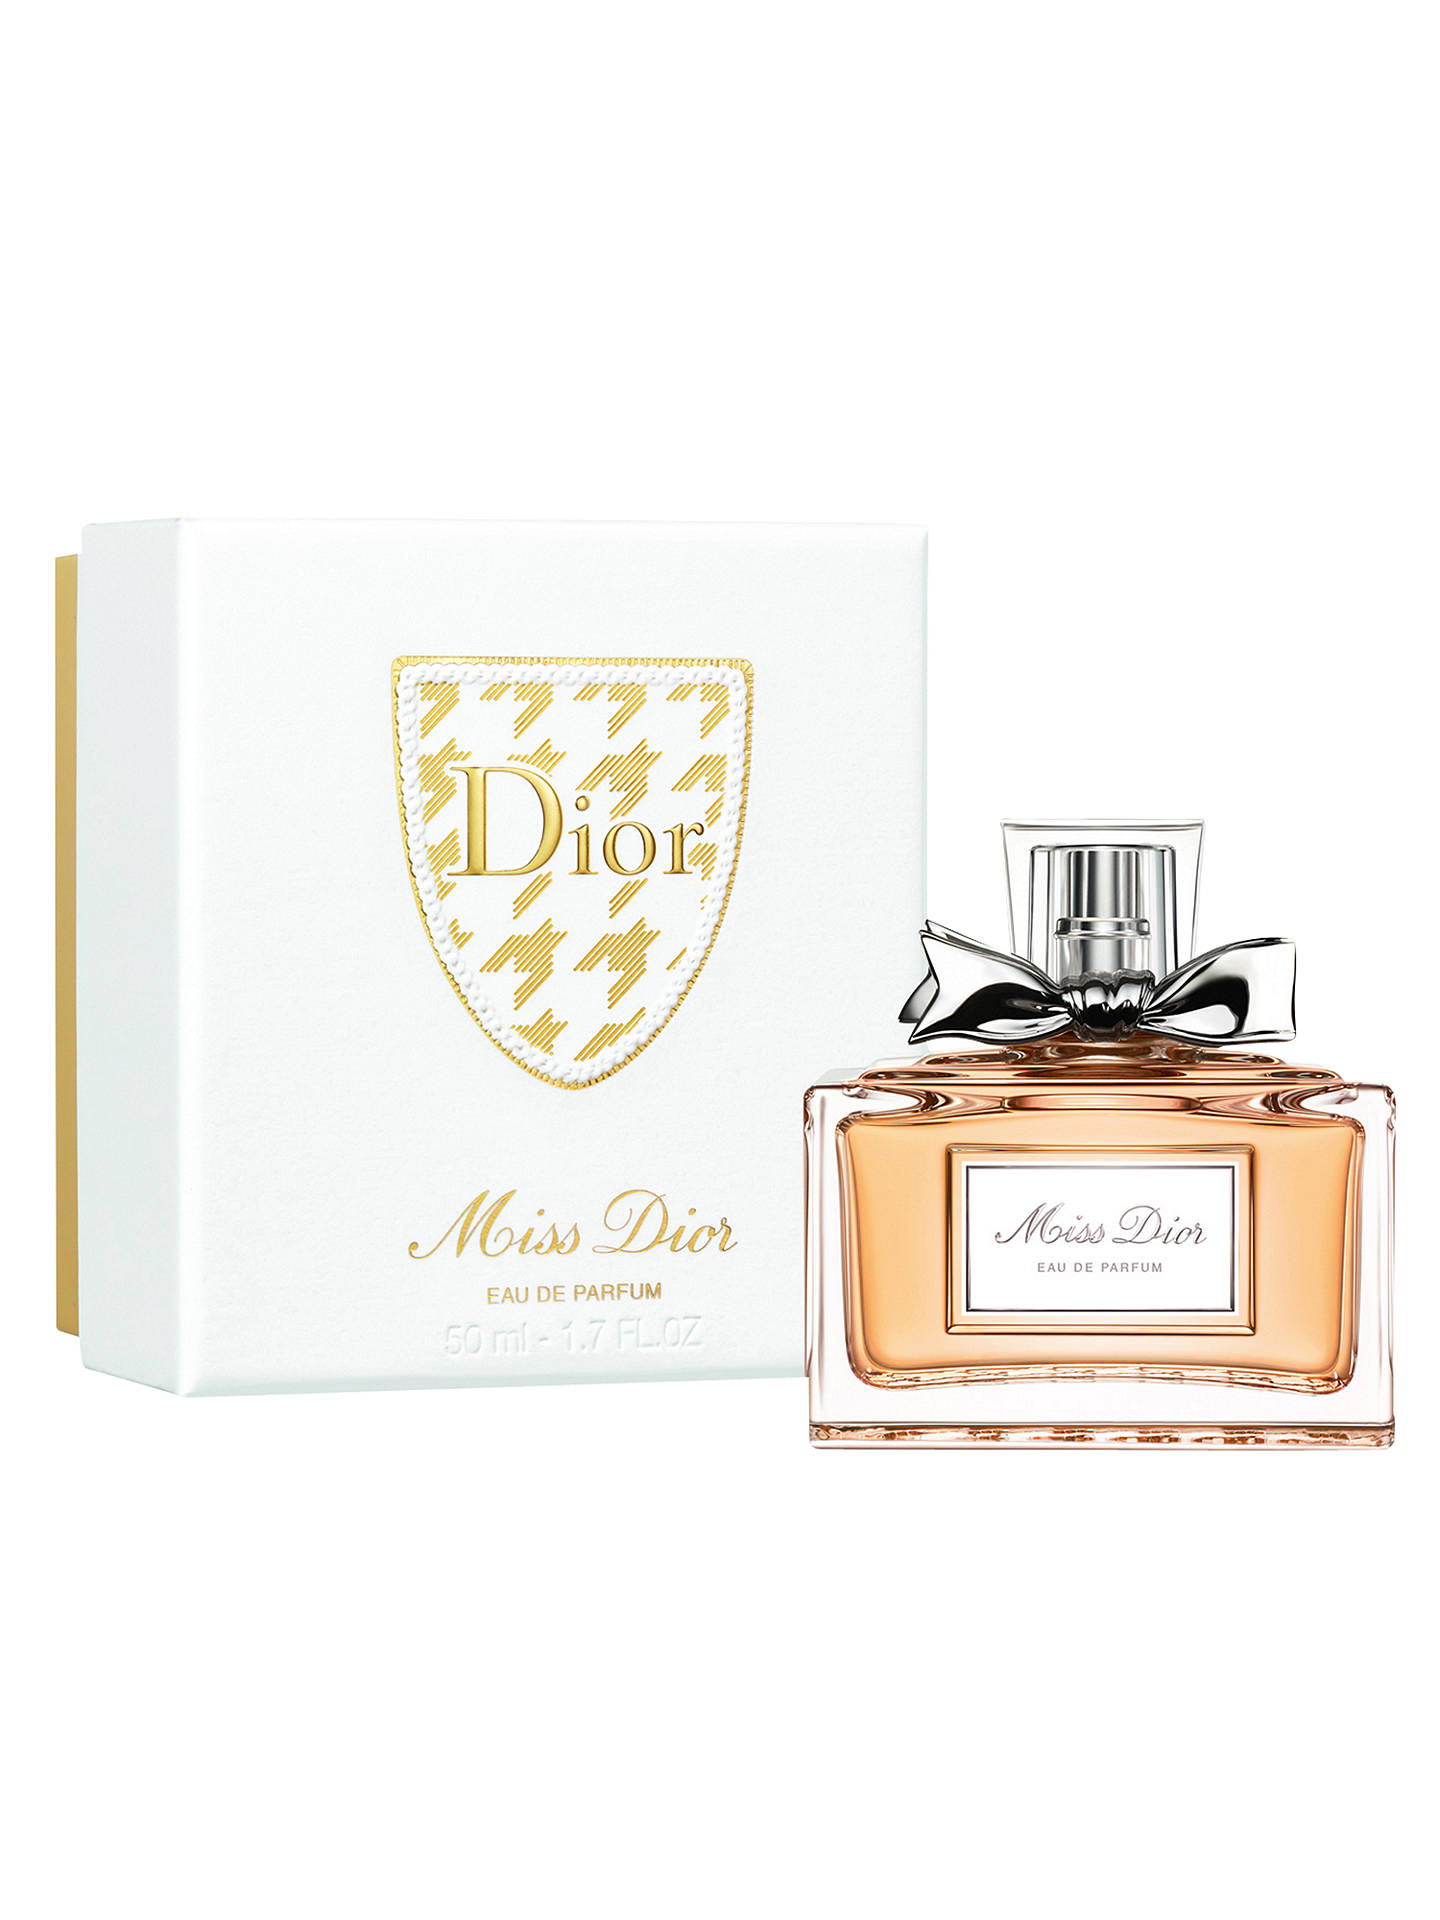 Dior Miss Dior 50ml Eau de Parfum Christmas Gift Box at